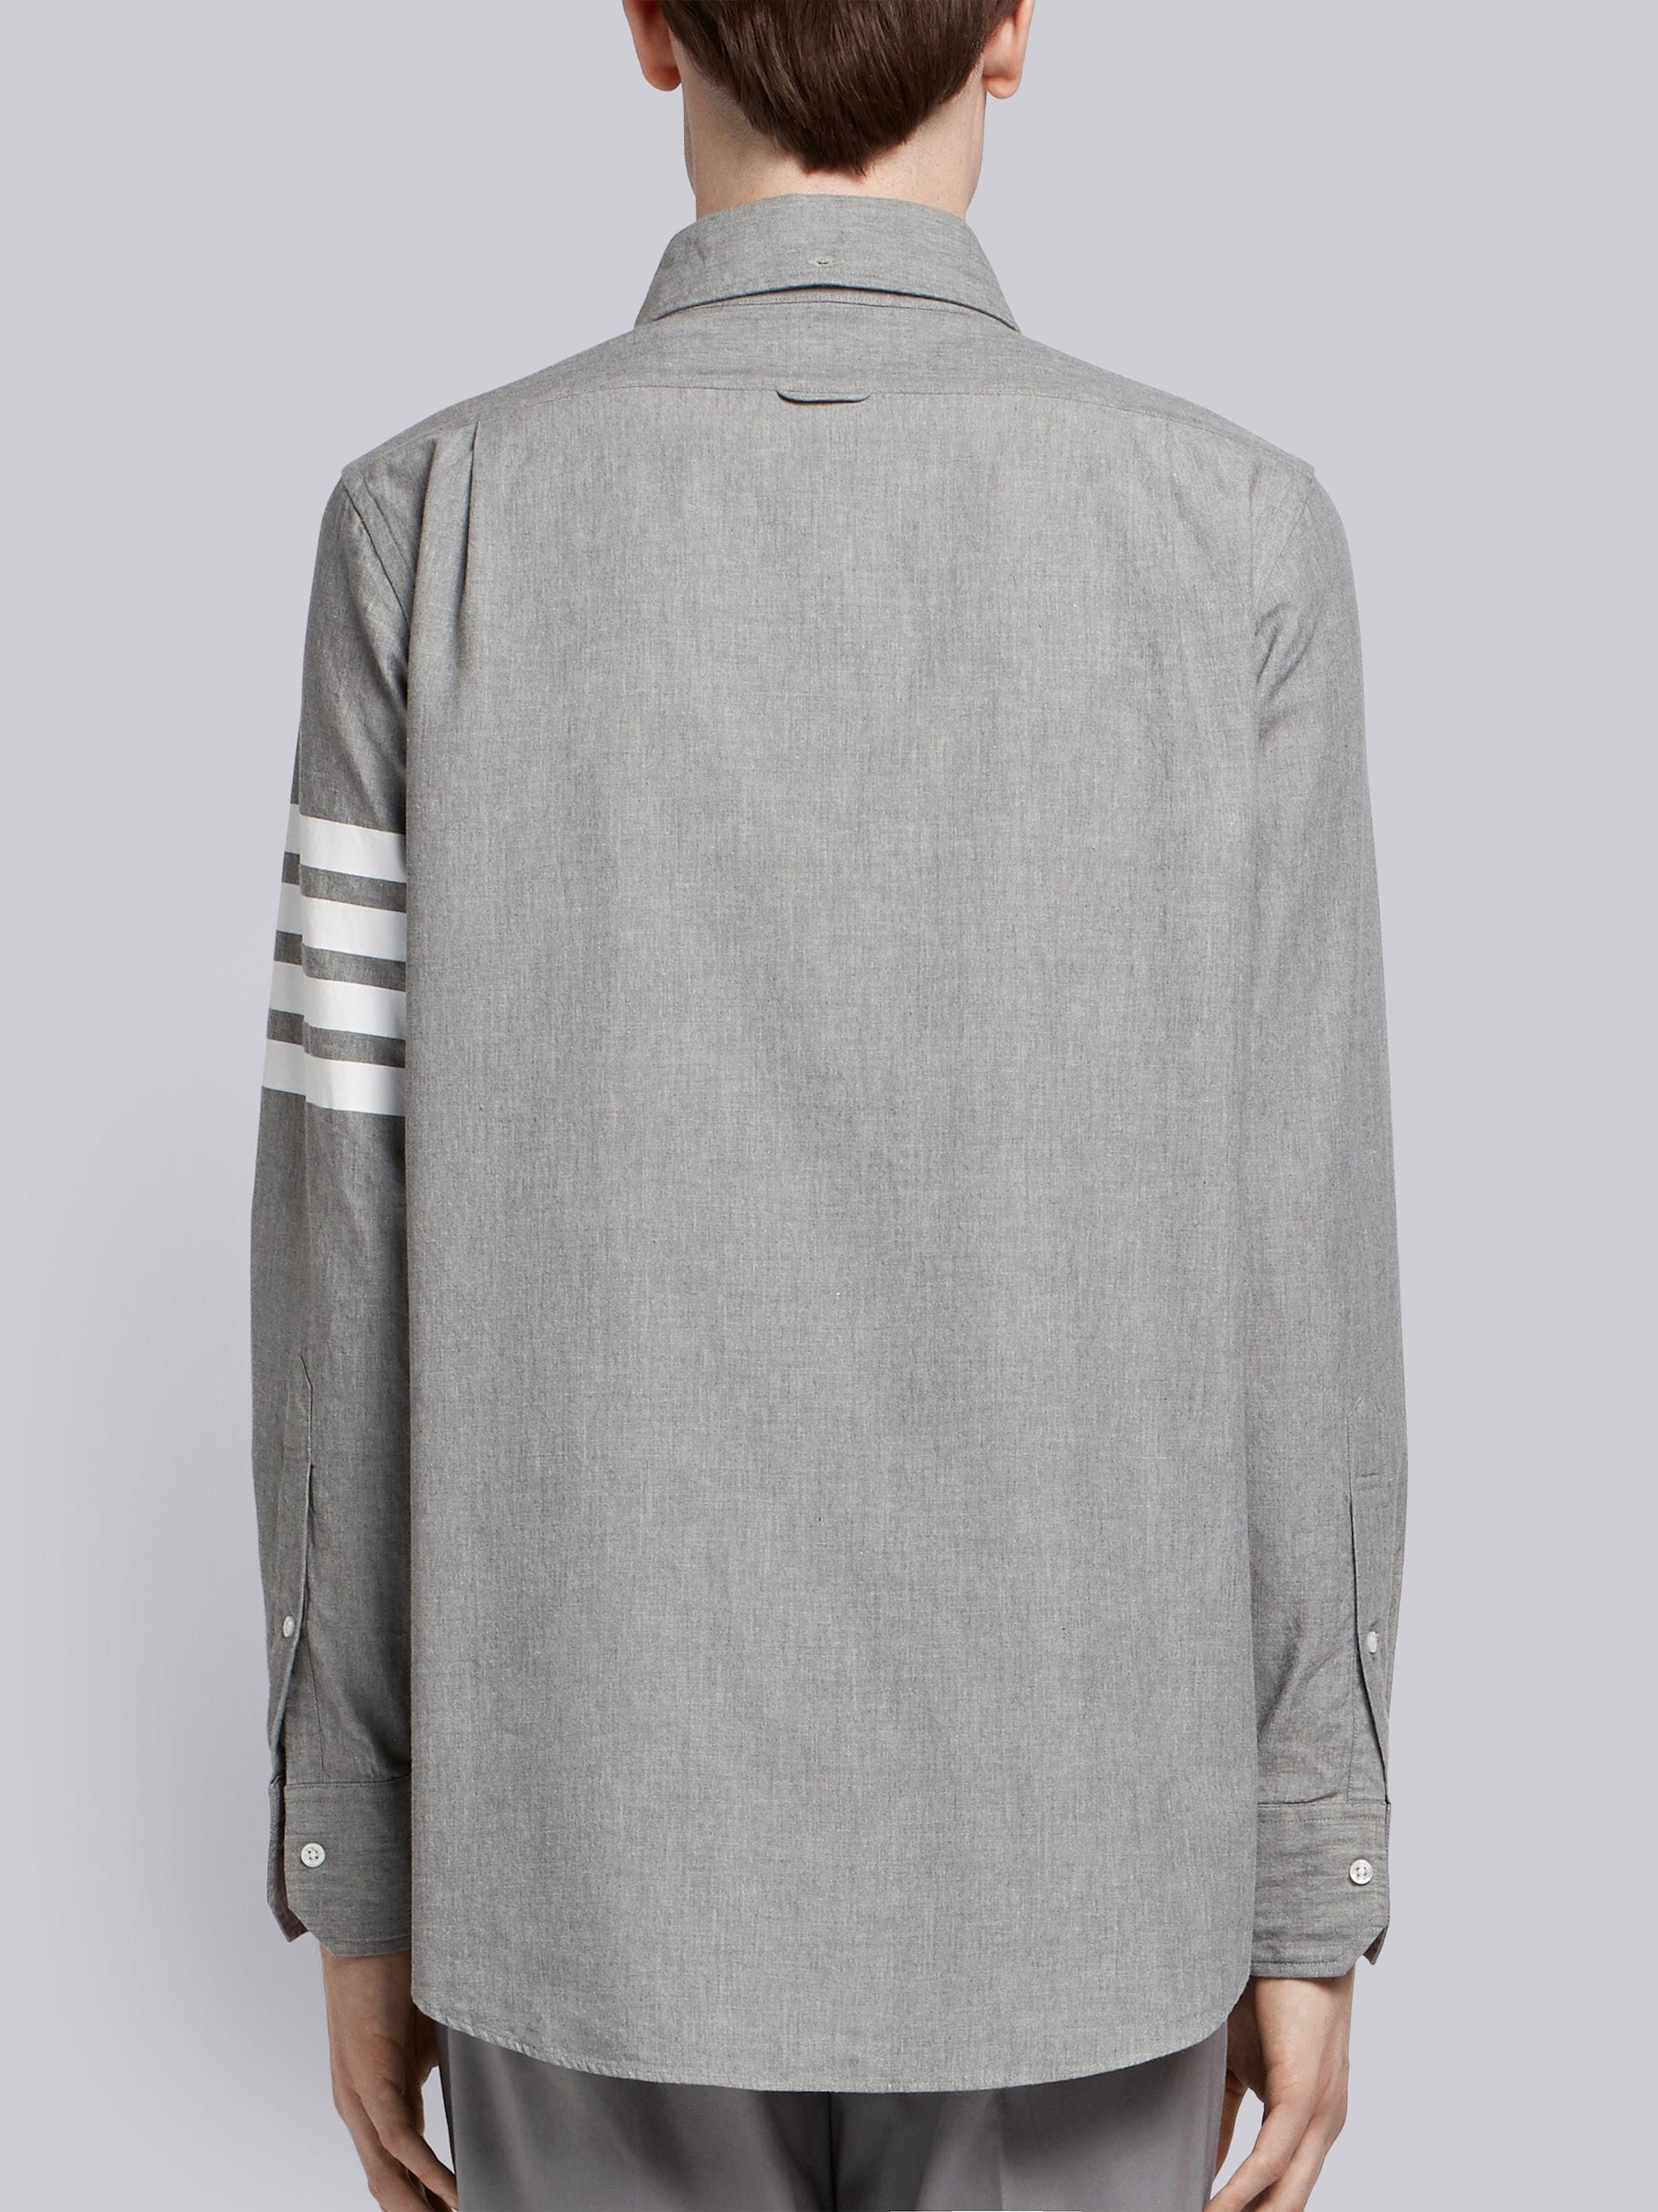 Medium Grey Chambray Printed 4-bar Nametag Straight Fit Shirt - 4